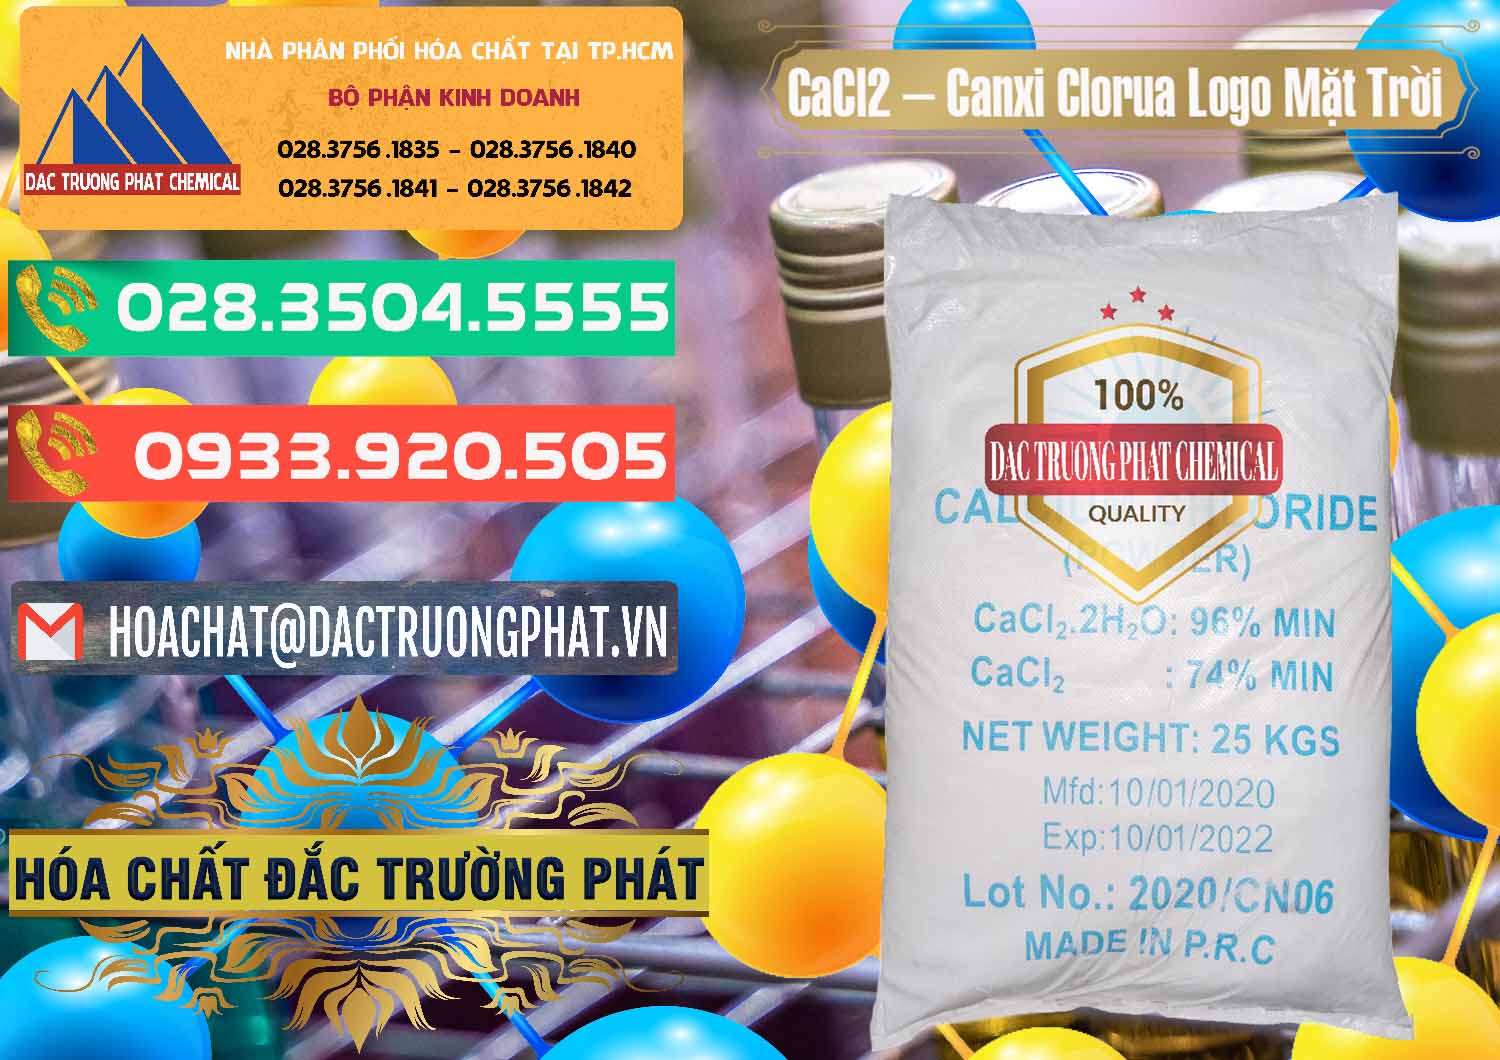 Nơi bán _ phân phối CaCl2 – Canxi Clorua 96% Logo Mặt Trời Trung Quốc China - 0041 - Đơn vị nhập khẩu & cung cấp hóa chất tại TP.HCM - congtyhoachat.com.vn